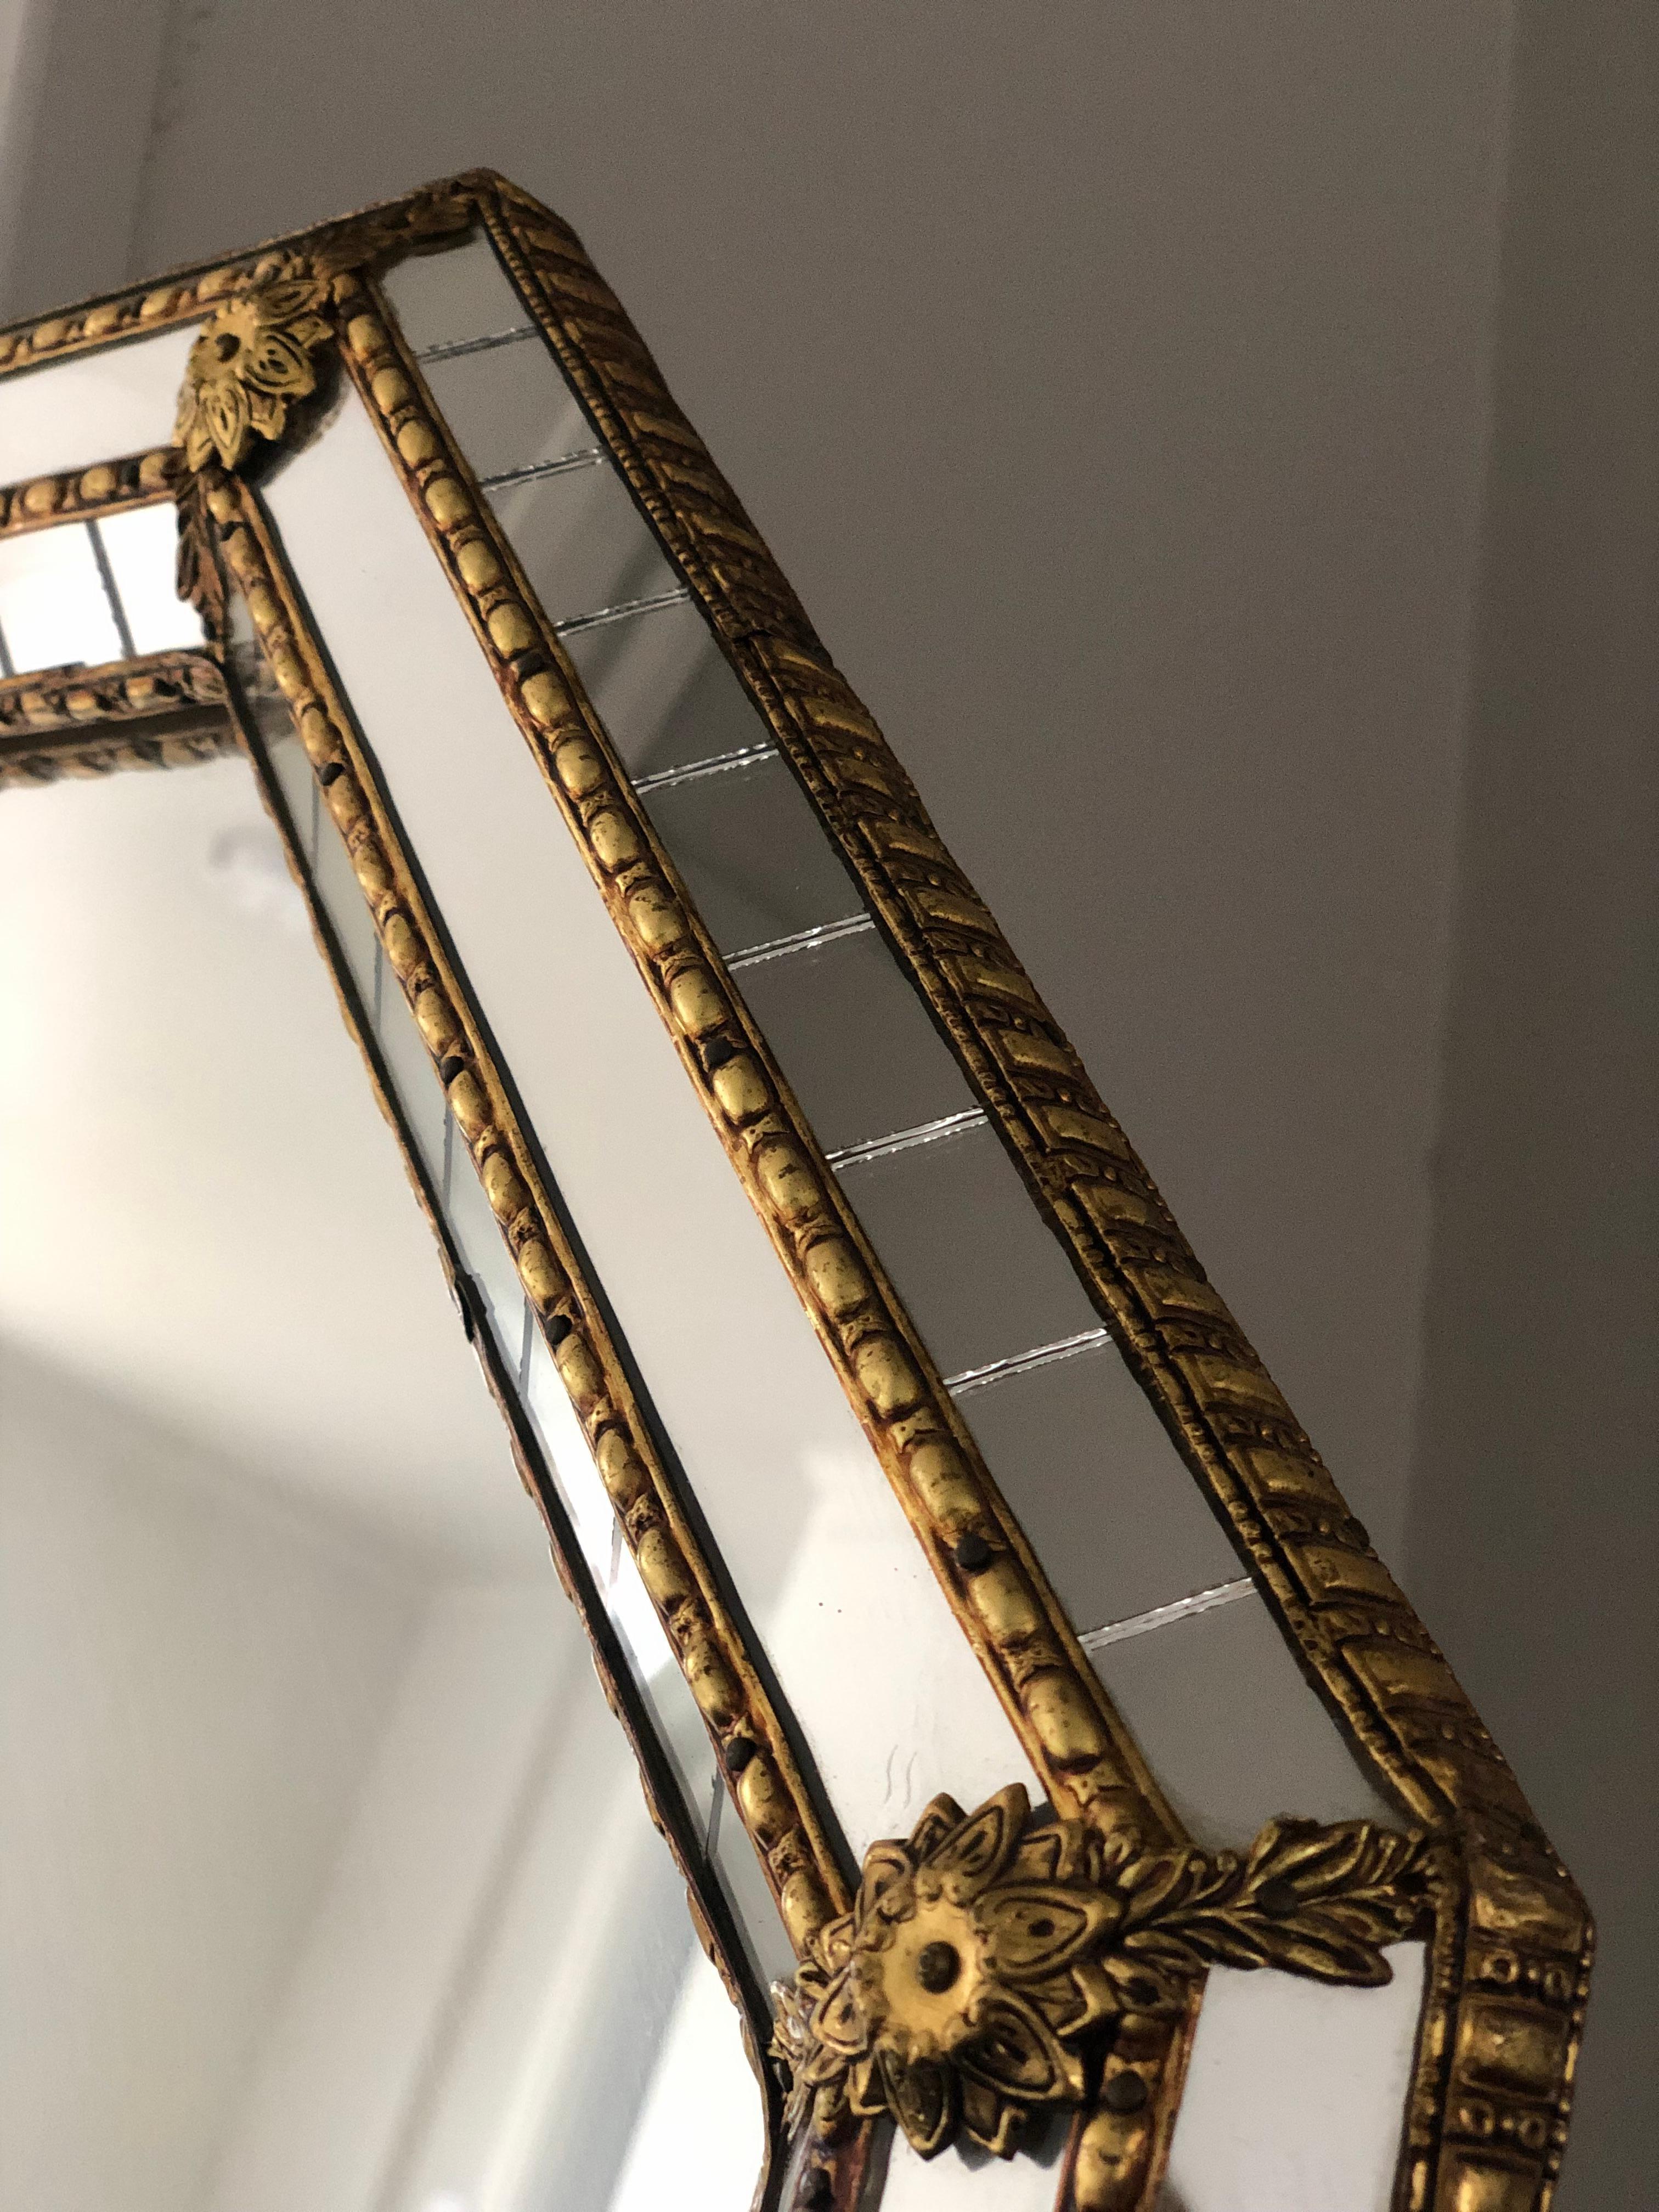 Schöner spanischer achteckiger Spiegel mit einem Rahmen aus venezianischem Glas mit einem goldenen Messingstreifen. Der Rahmen ist mit kleinen Kristallen außen und innen und größeren Kristallen in der Mittellinie versehen. Der Messingstreifen hält